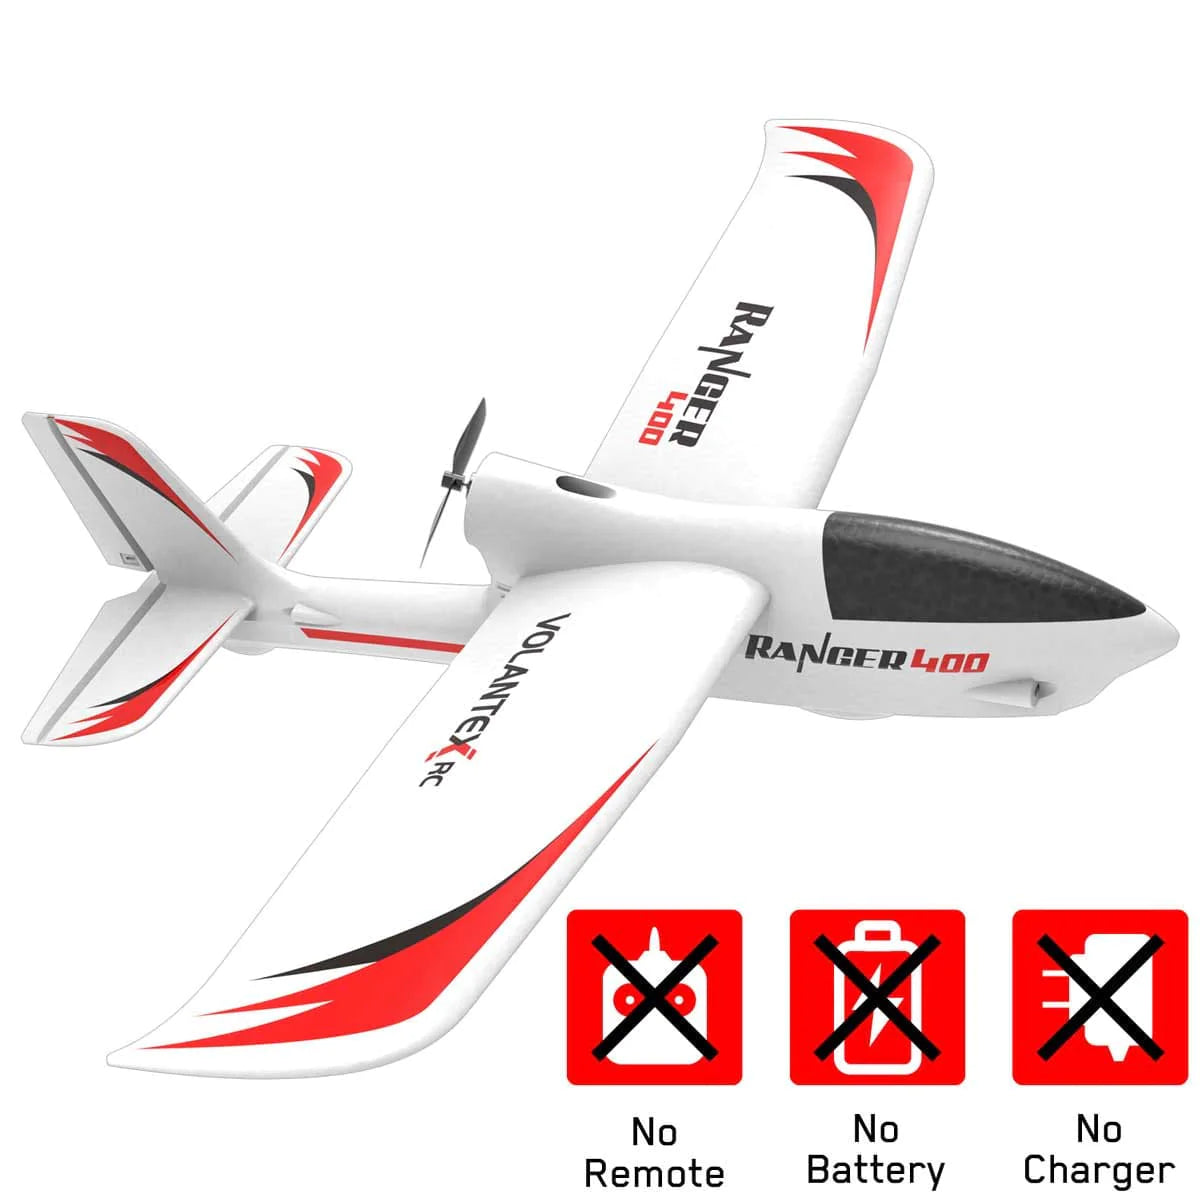 VOLANTEXRC Ranger 400 RC Trainer Airplane con Xpilot 6-AXIS Gyro System fácil de volar para principiantes park flyer rc glider (761-6) RTF